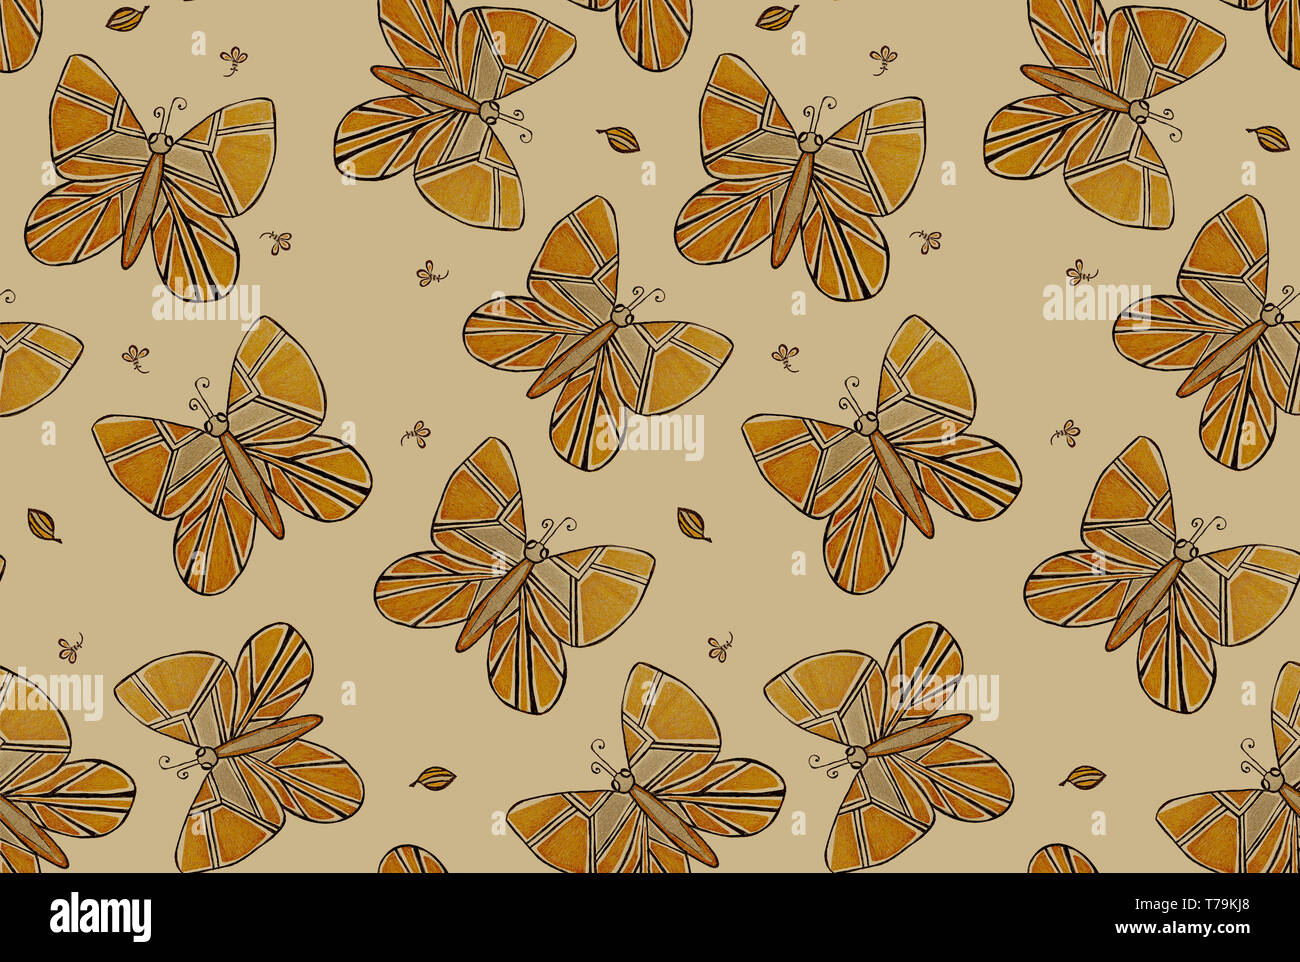 Batterfly Beige motif transparente pour les tissus, vêtements Banque D'Images